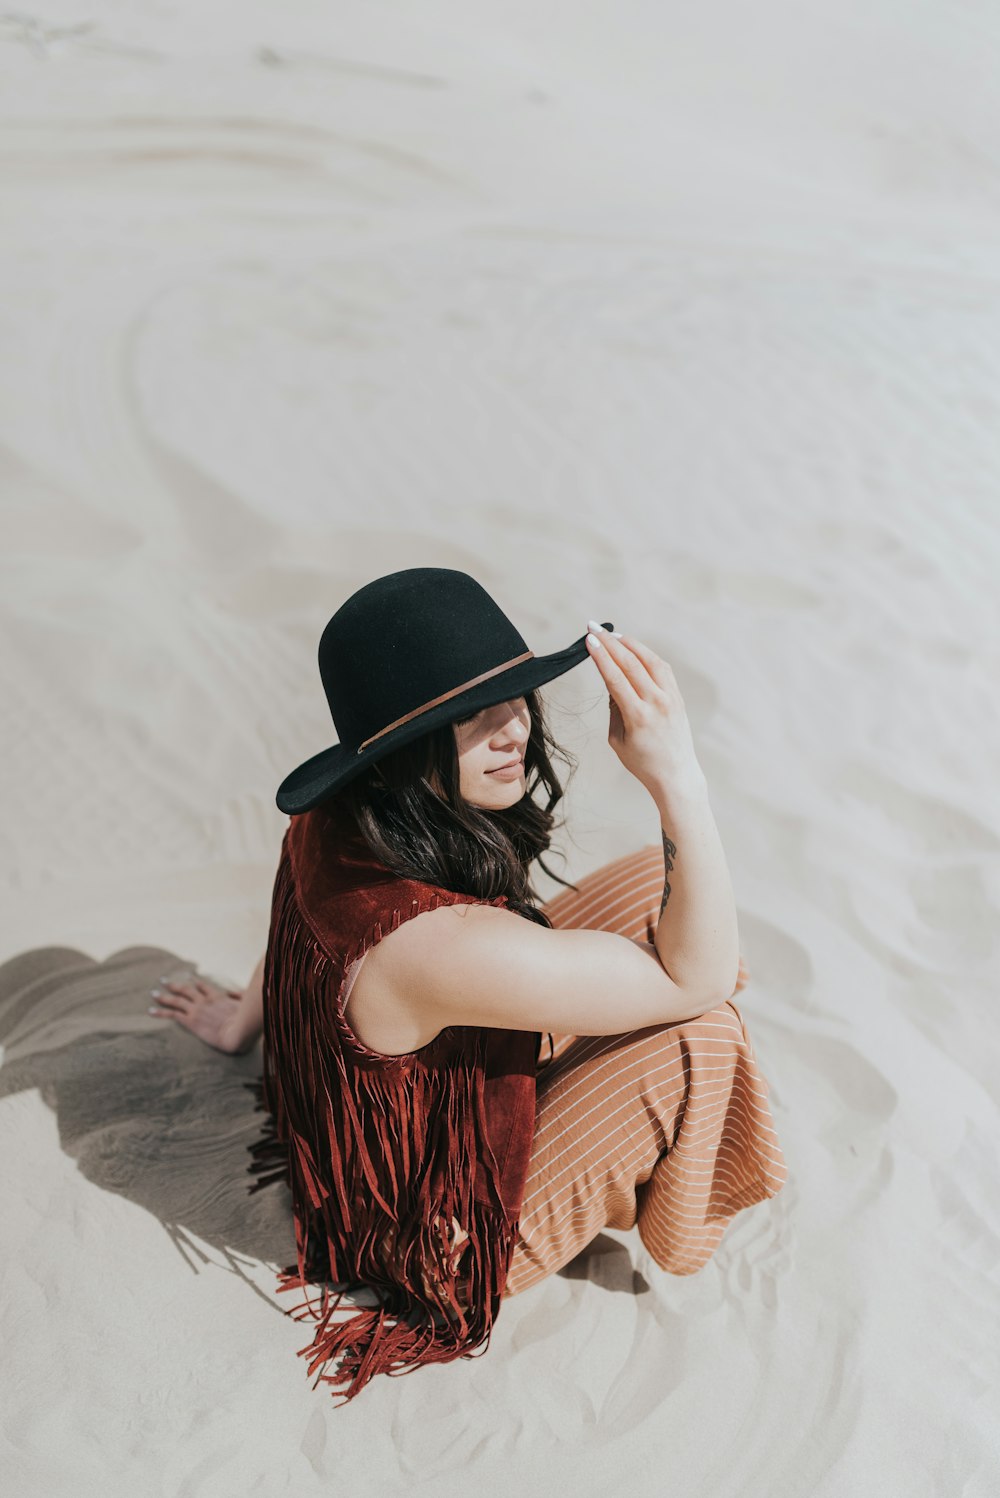 낮 동안 하얀 모래 위에 앉아 검은 모자를 쓰고 갈색과 검은색 드레스를 입은 여자